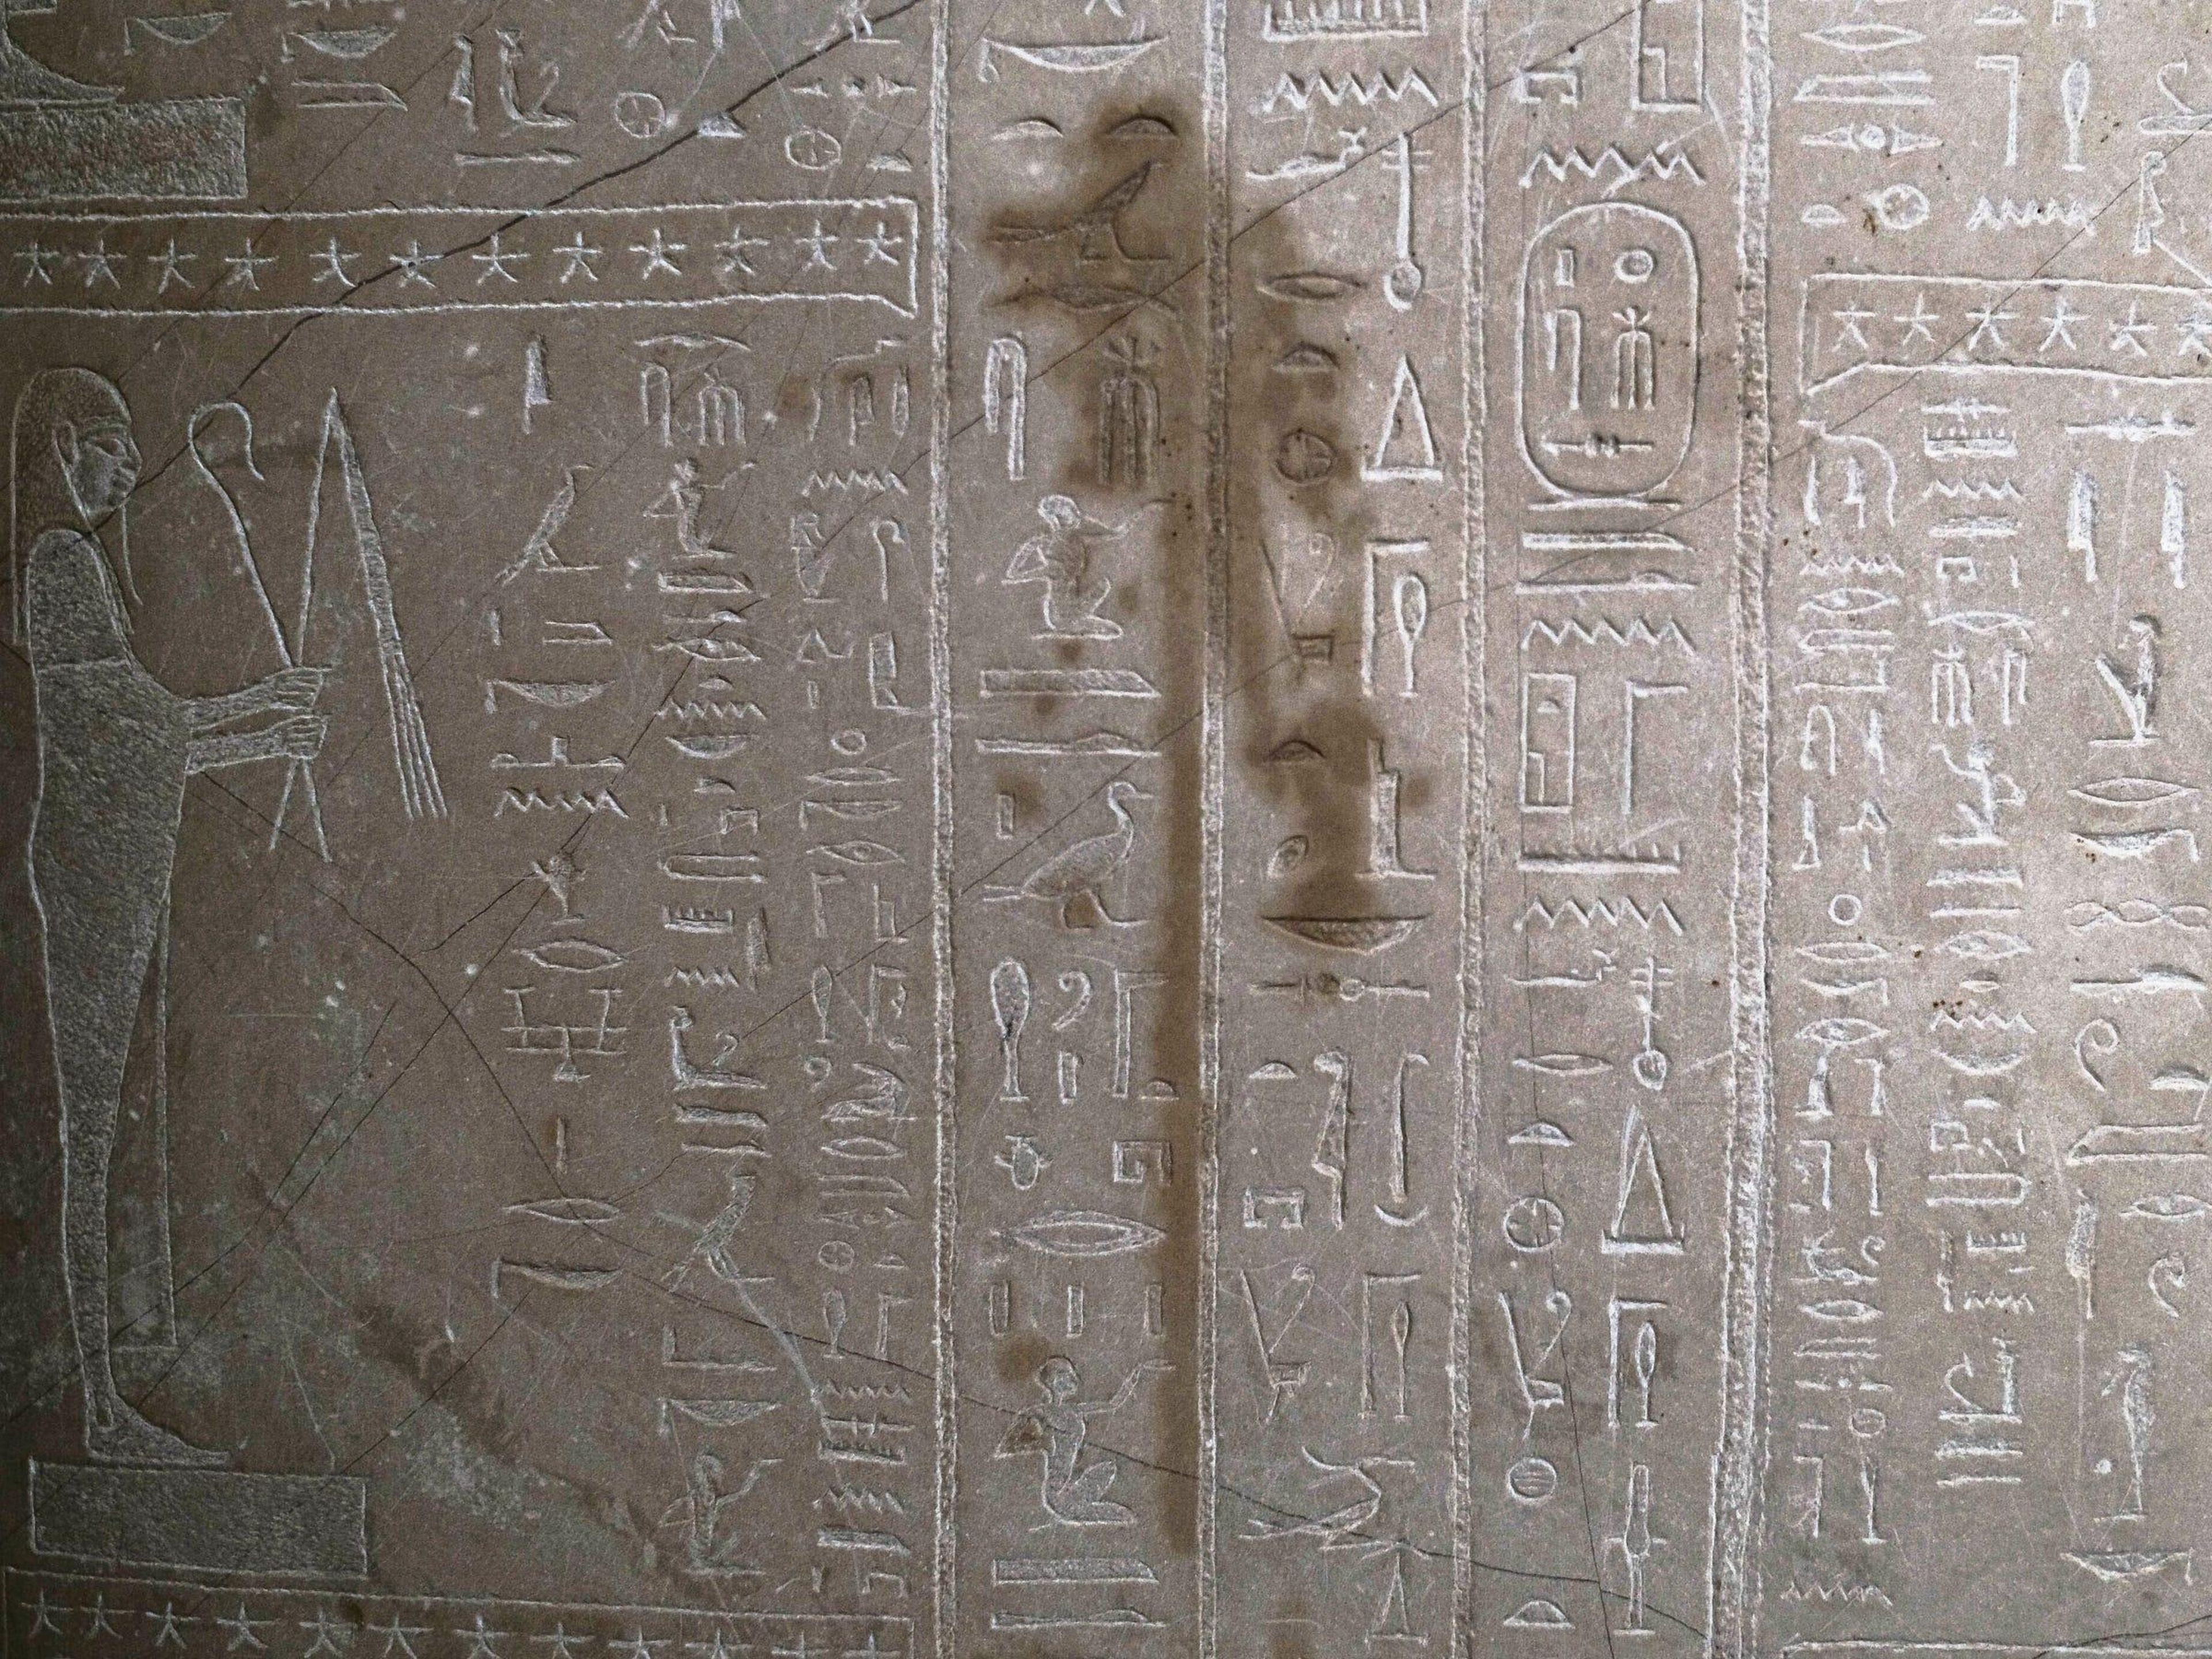 Hay mancha en el sarcófago del profeta Ahmose dentro de la corte egipcia del Neue Museum después de untarlo con un líquido en Berlín, Alemania.